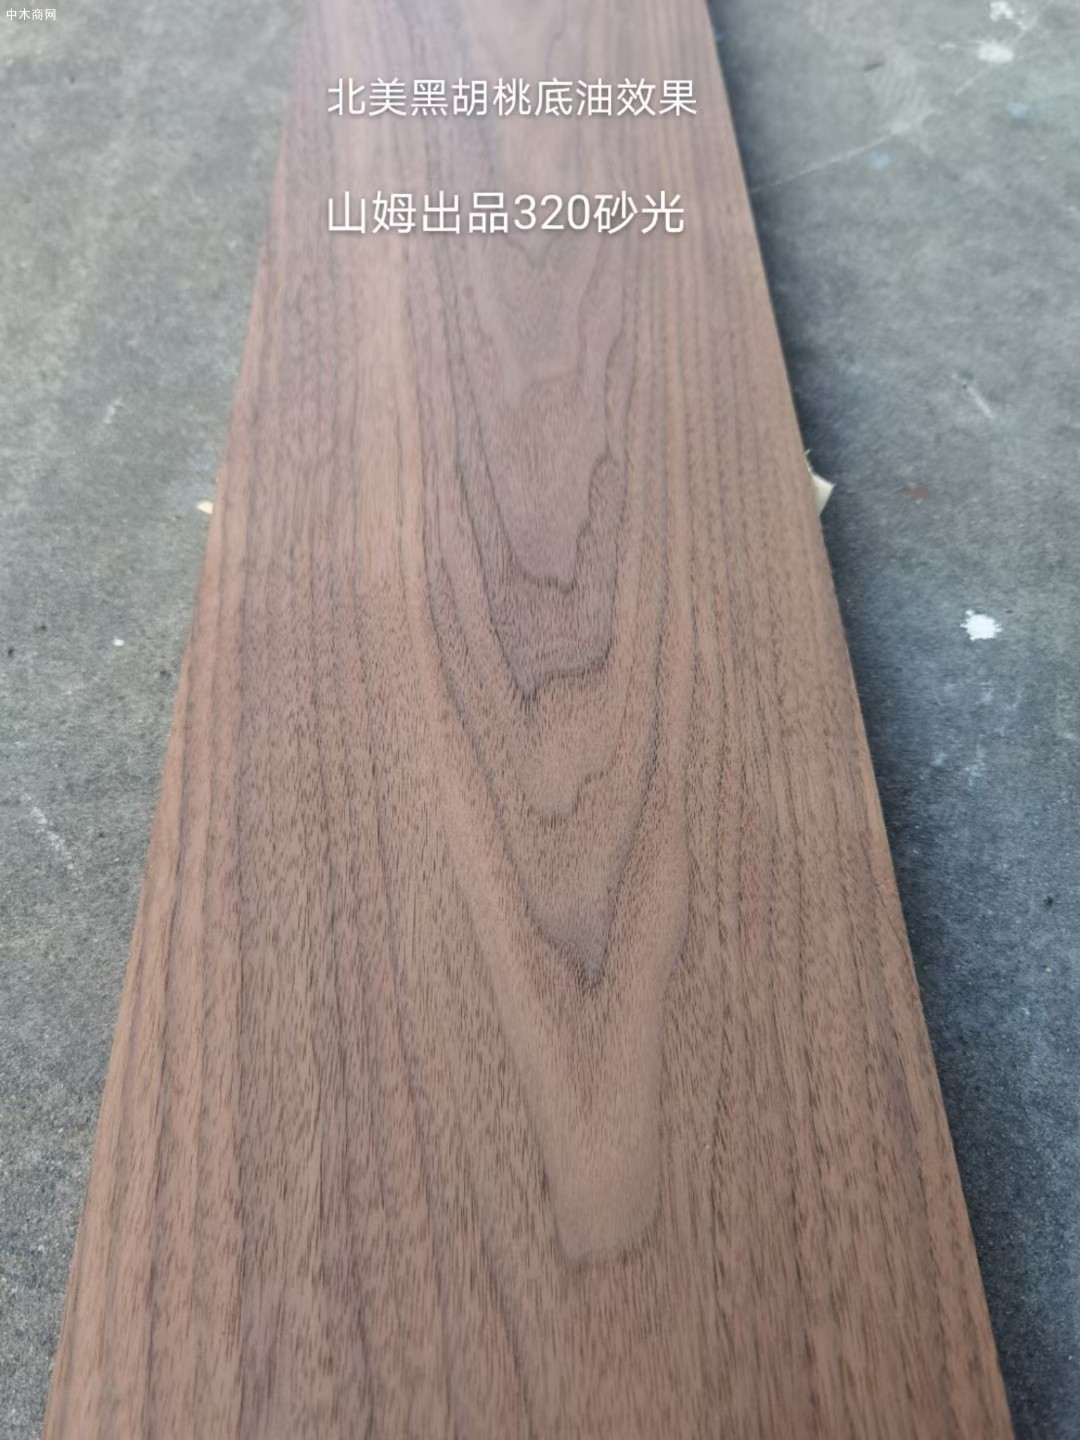 美国黑胡桃木实木家具板材国内品牌求购